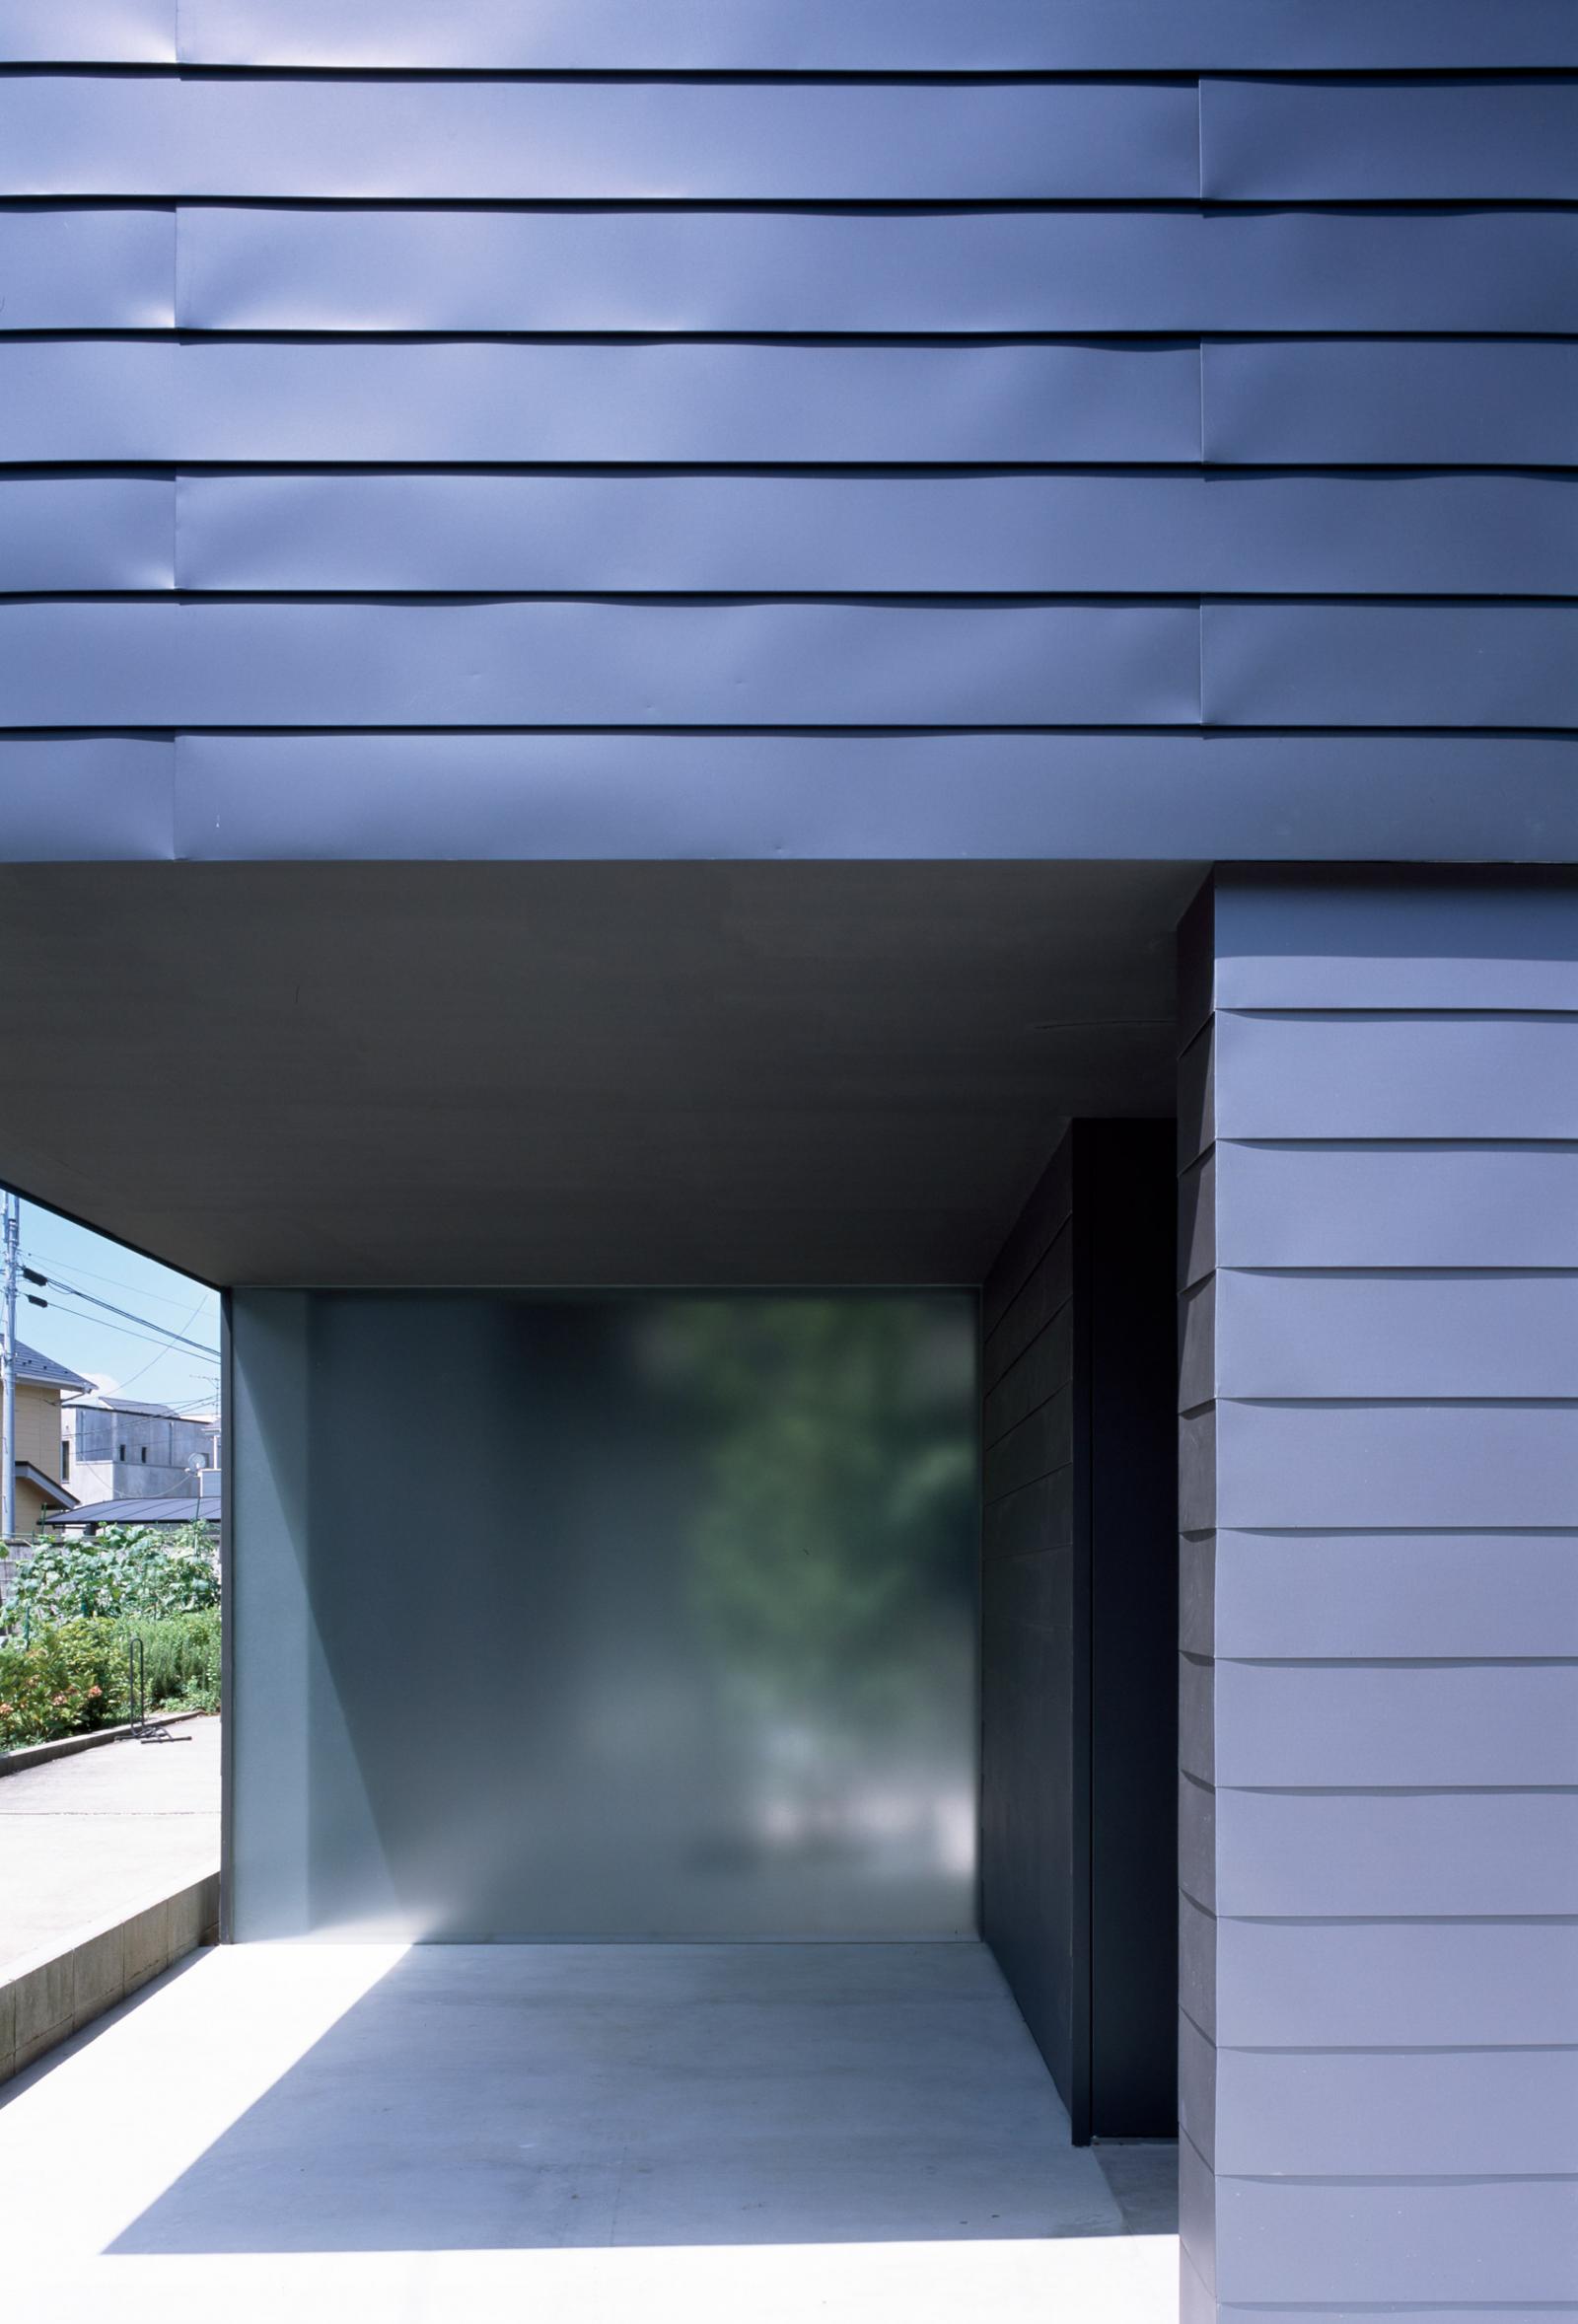 Hình ảnh cận cảnh một mặt bên ngôi nhà ở Nhật với tông màu xanh than chủ đạo